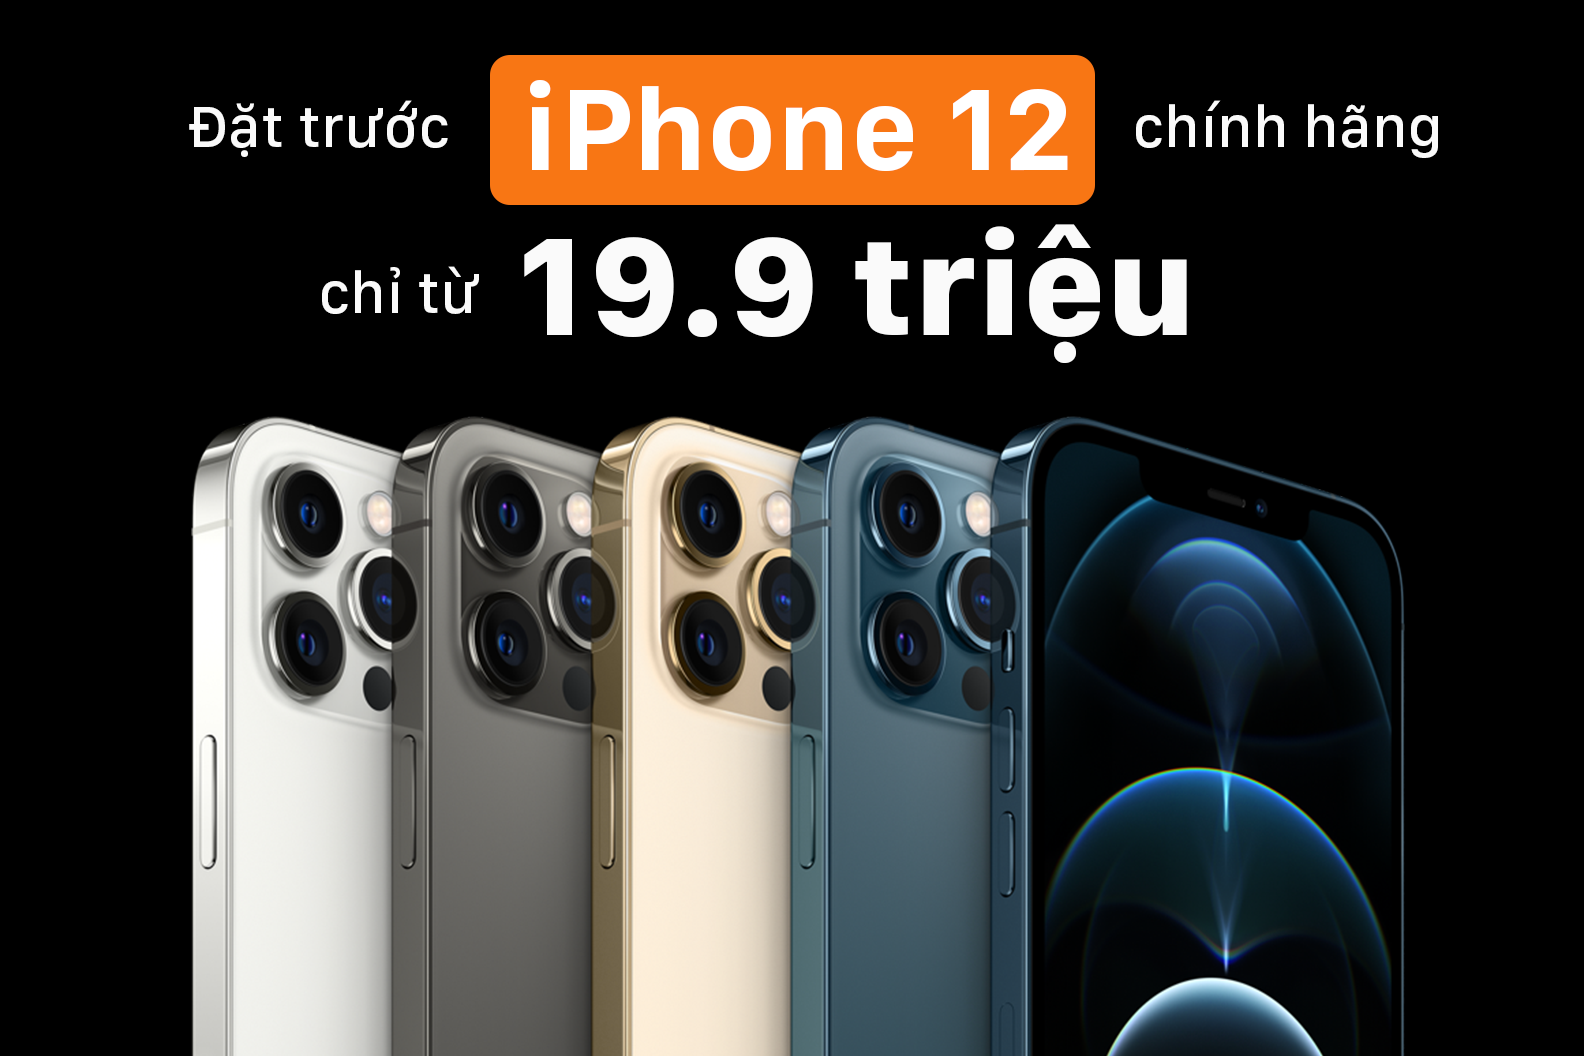 Đặt trước iPhone 12 Series giá sốc chỉ từ 19.9 triệu | Hỗ trợ trả góp 0% và thu cũ đổi mới